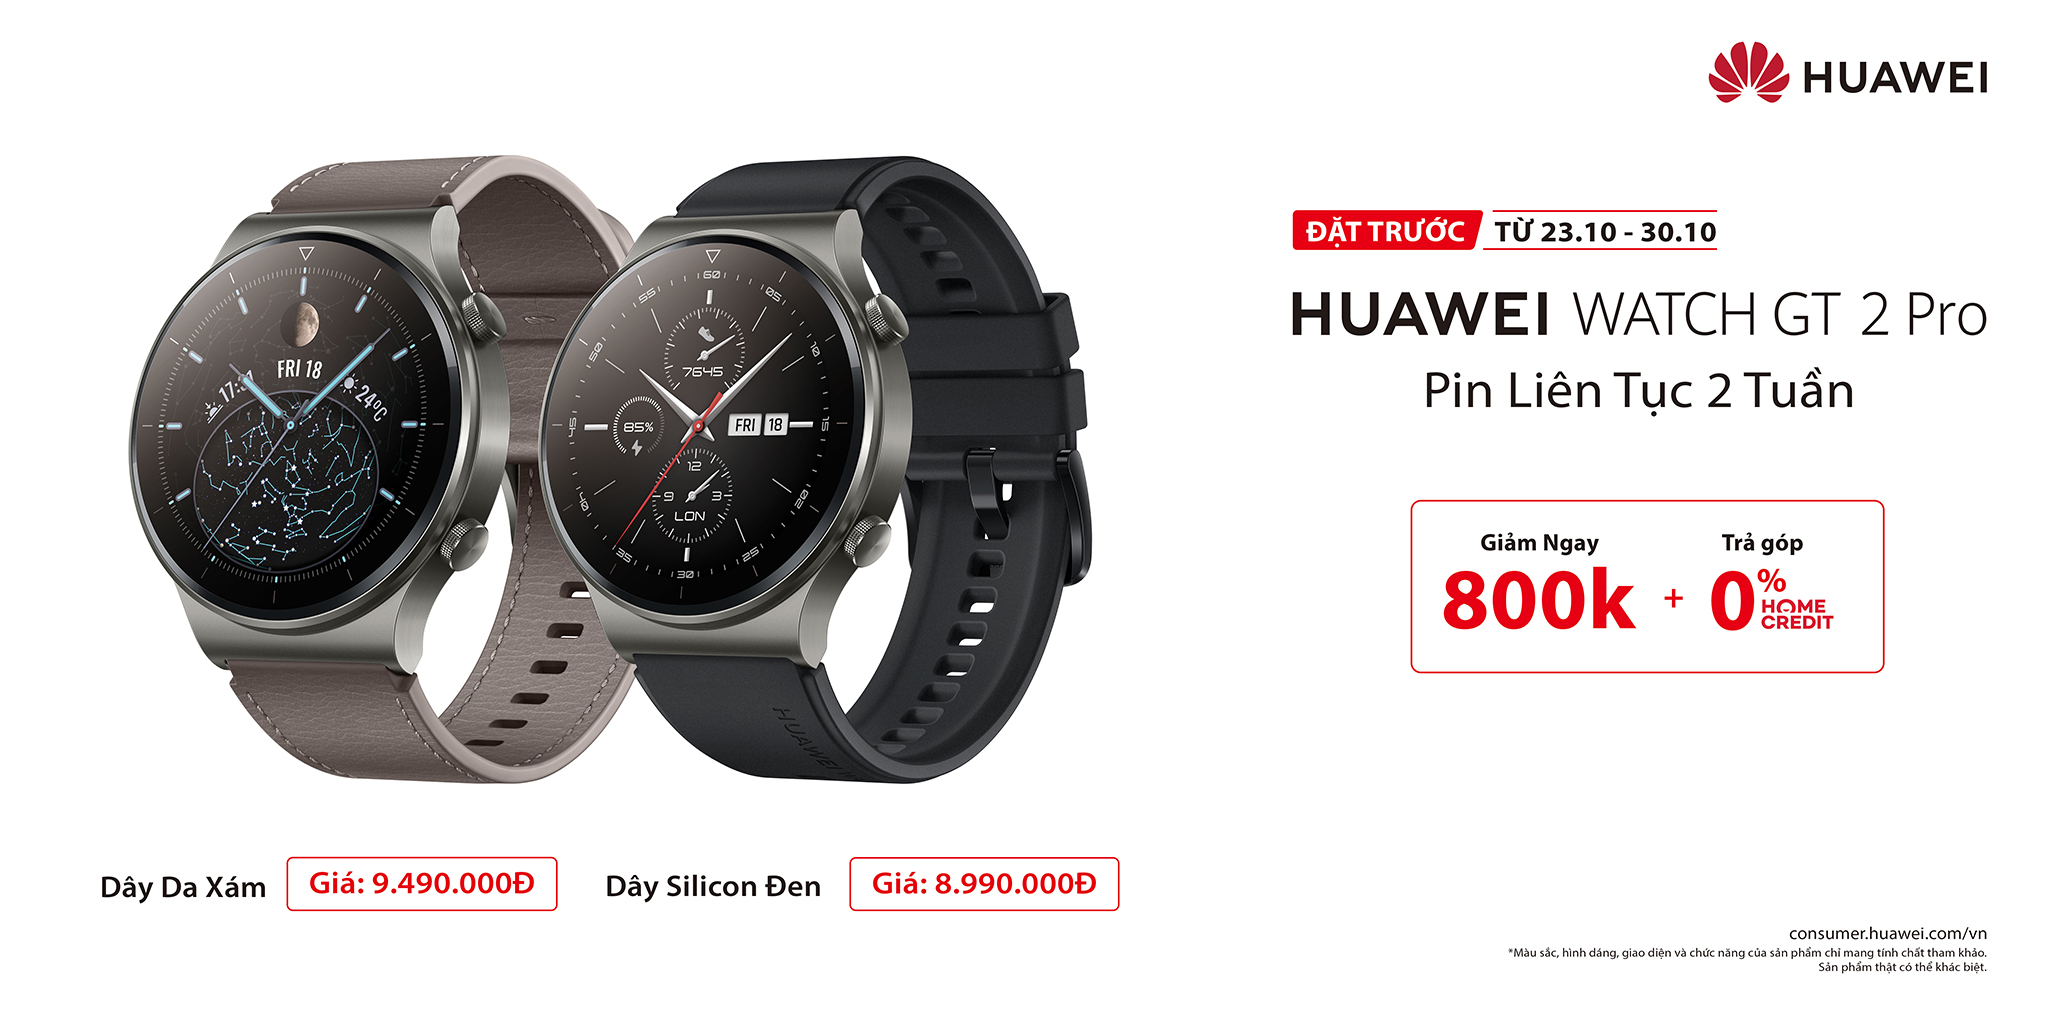 Huawei Watch GT 2 Pro ra mắt: Hoàn thiện cao cấp, nhiều chế độ luyện tập, pin 2 tuần, giá từ 8.99 triệu đồng - Ảnh 8.